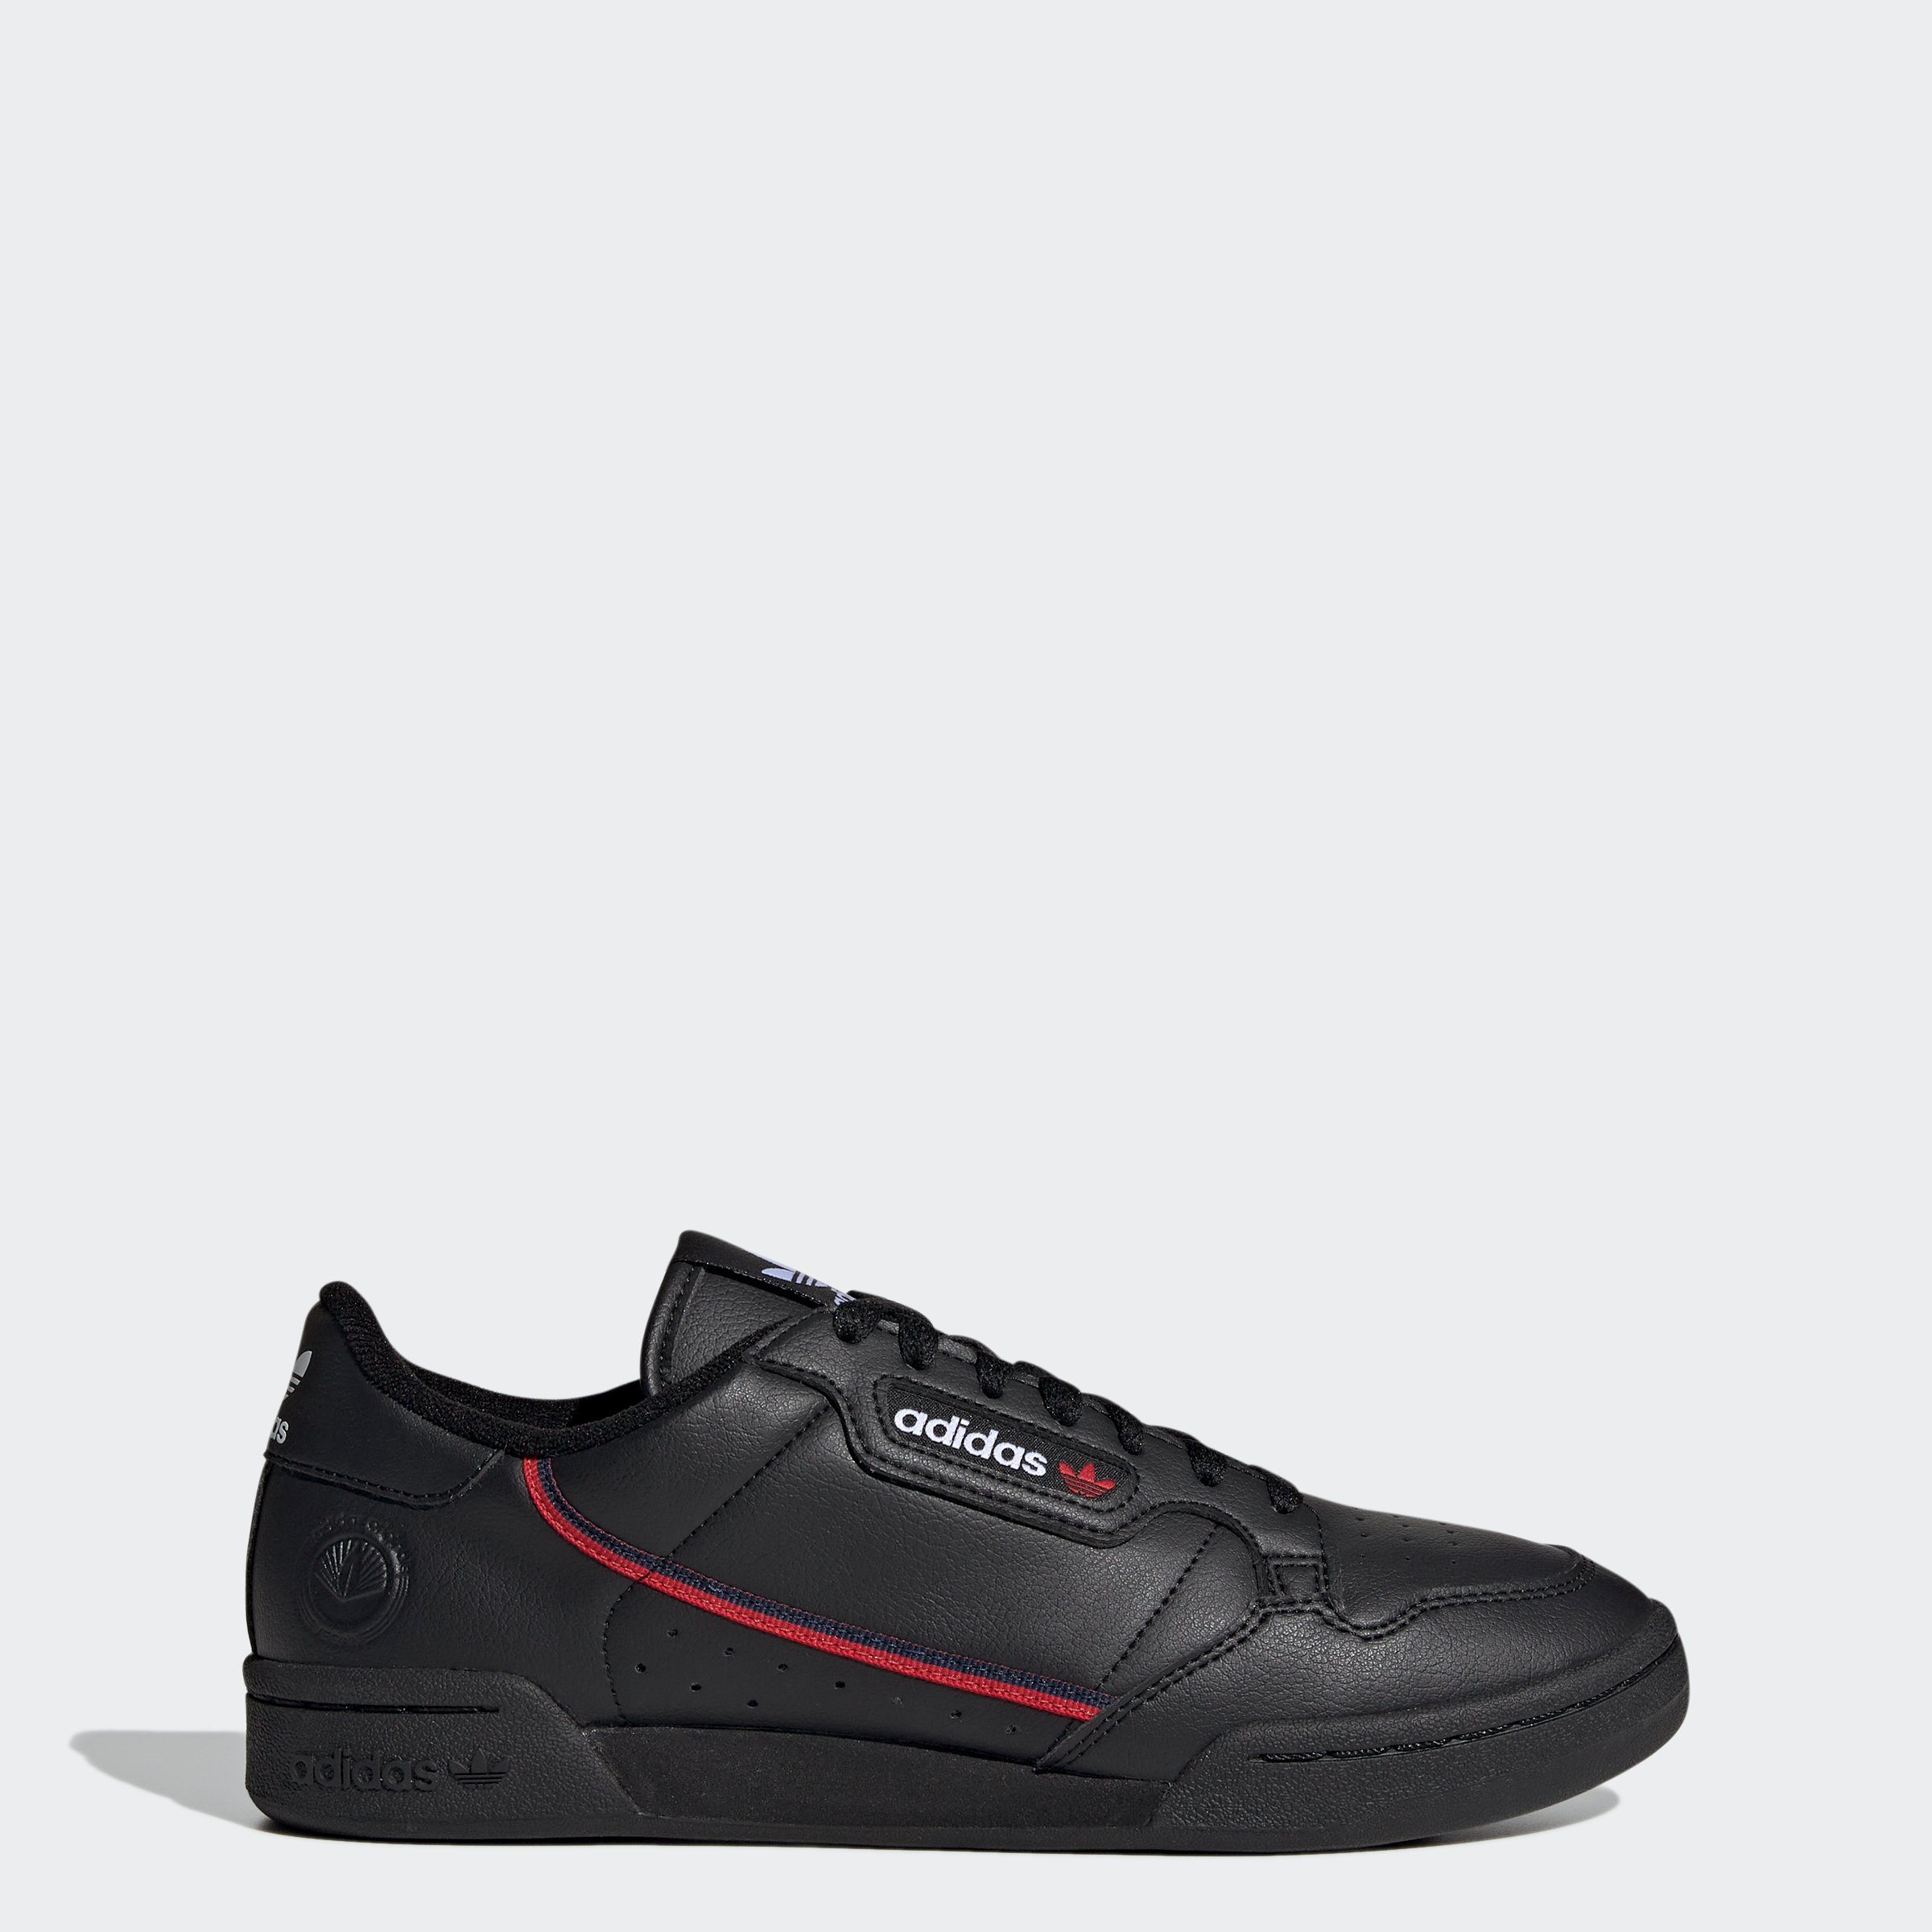 adidas Originals CONTINENTAL Sneaker CBLACK-CONAVY-SCARLE VEGAN 80